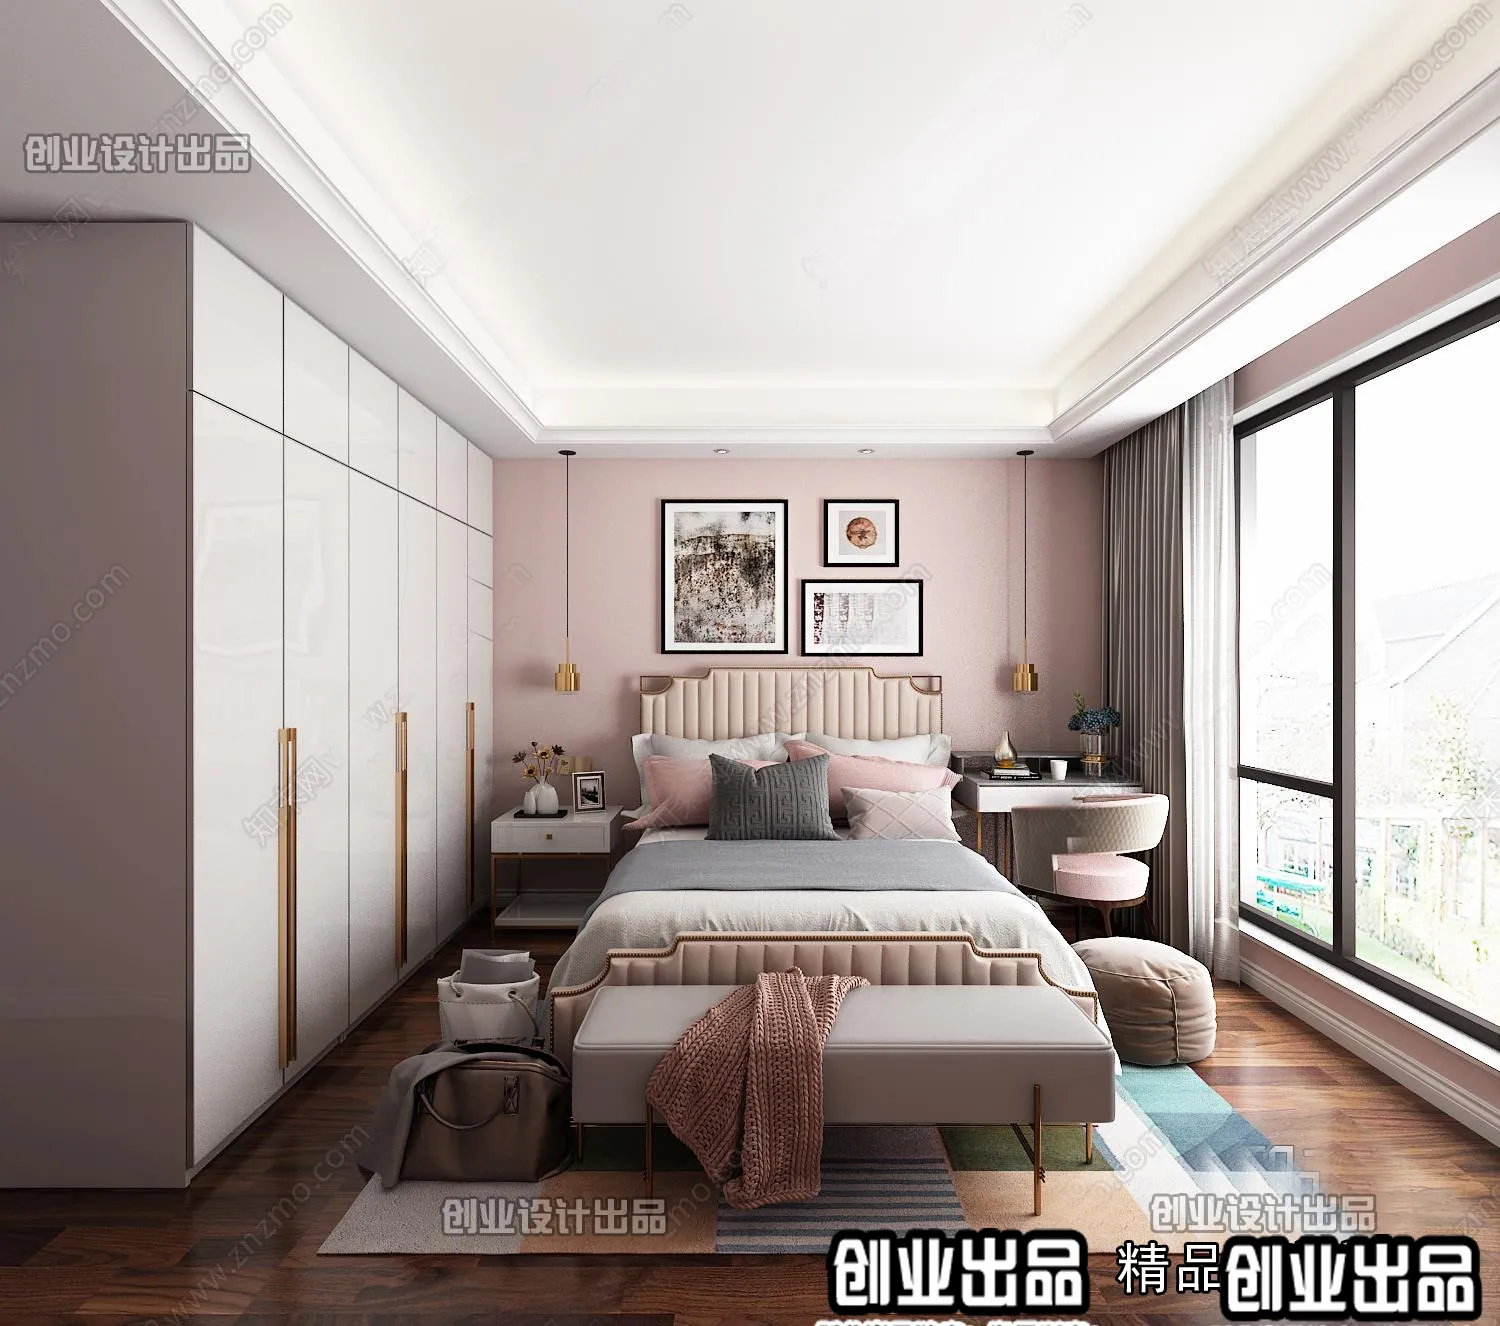 Bedroom – Modern Design – 3D66 – 3D Scenes – 022